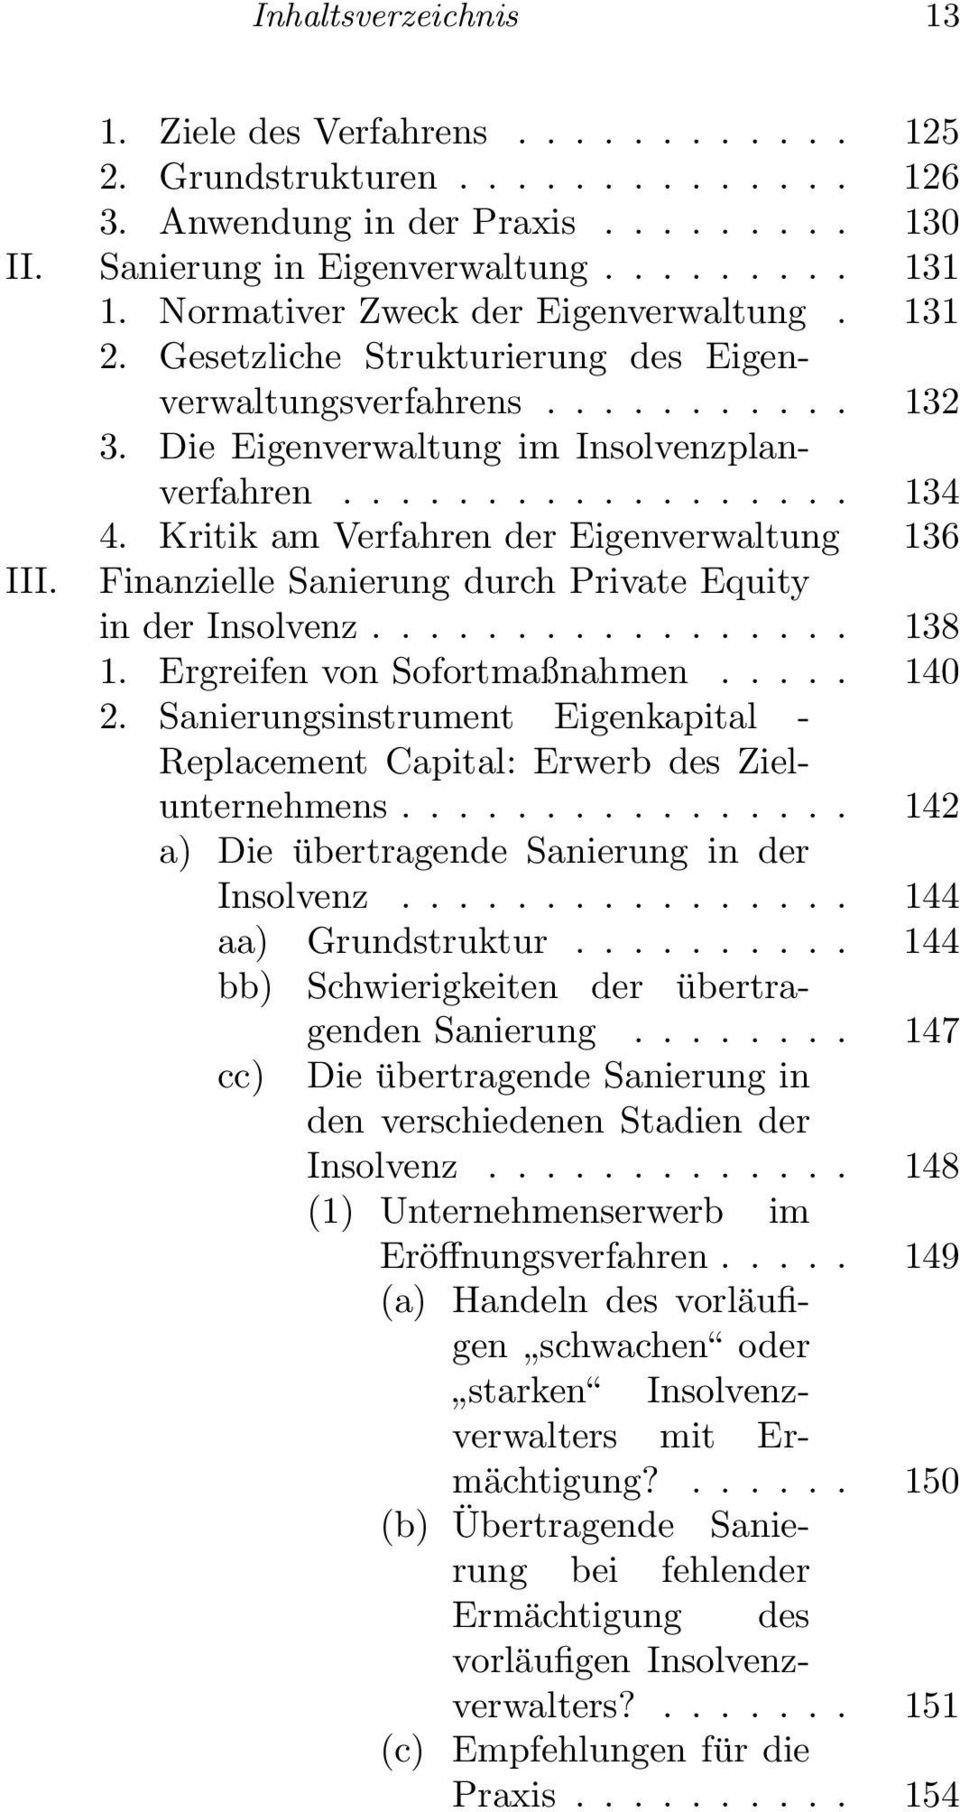 Kritik am Verfahren der Eigenverwaltung 136 III. Finanzielle Sanierung durch Private Equity in der Insolvenz................. 138 1. Ergreifen von Sofortmaßnahmen..... 140 2.